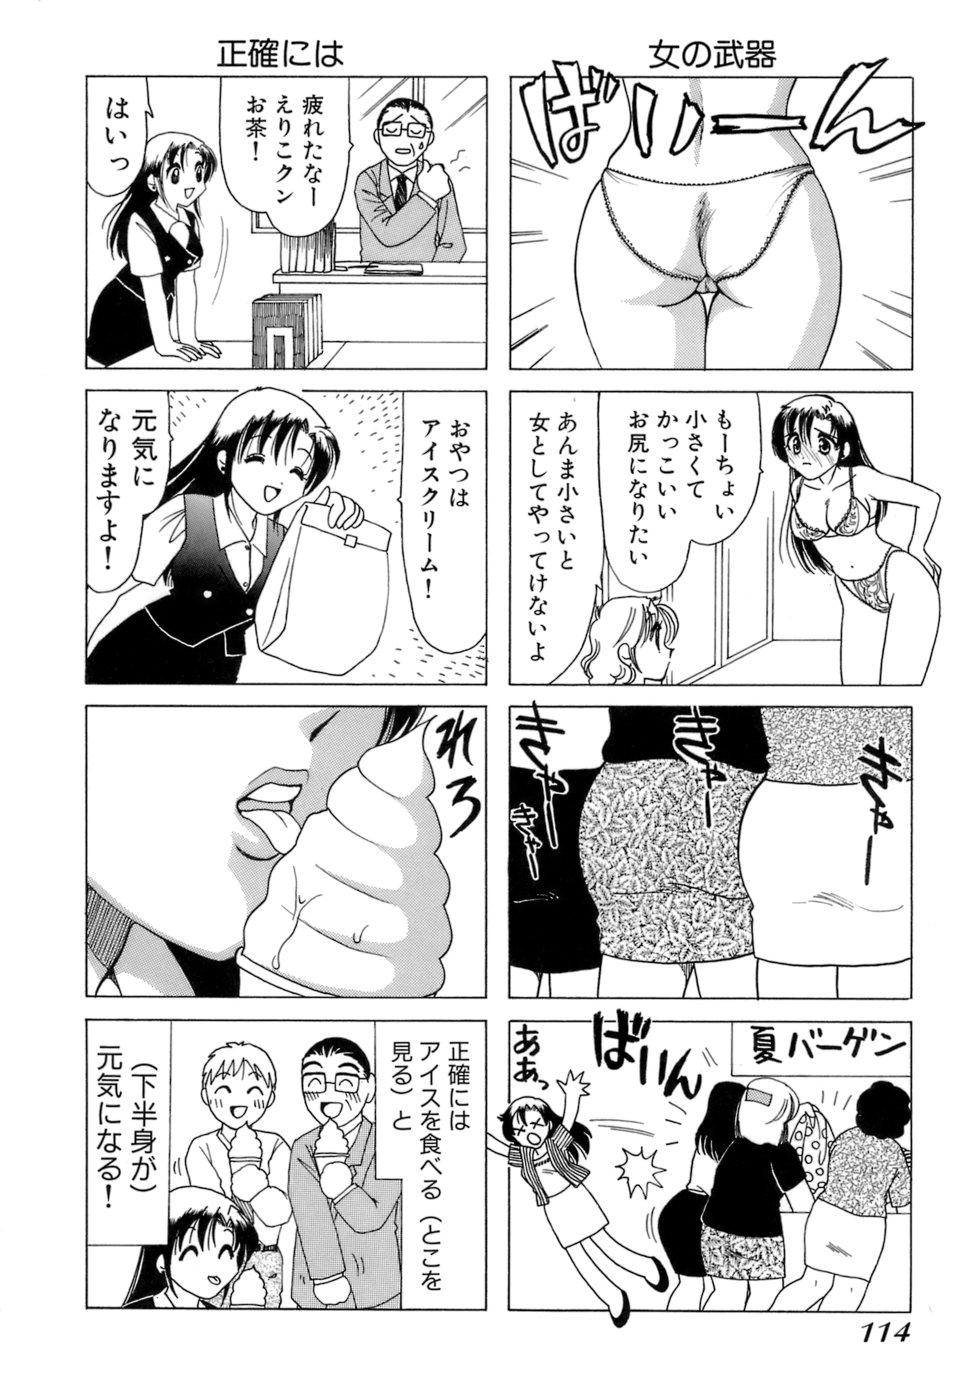 Eriko-kun, Ocha!! Vol.01 116